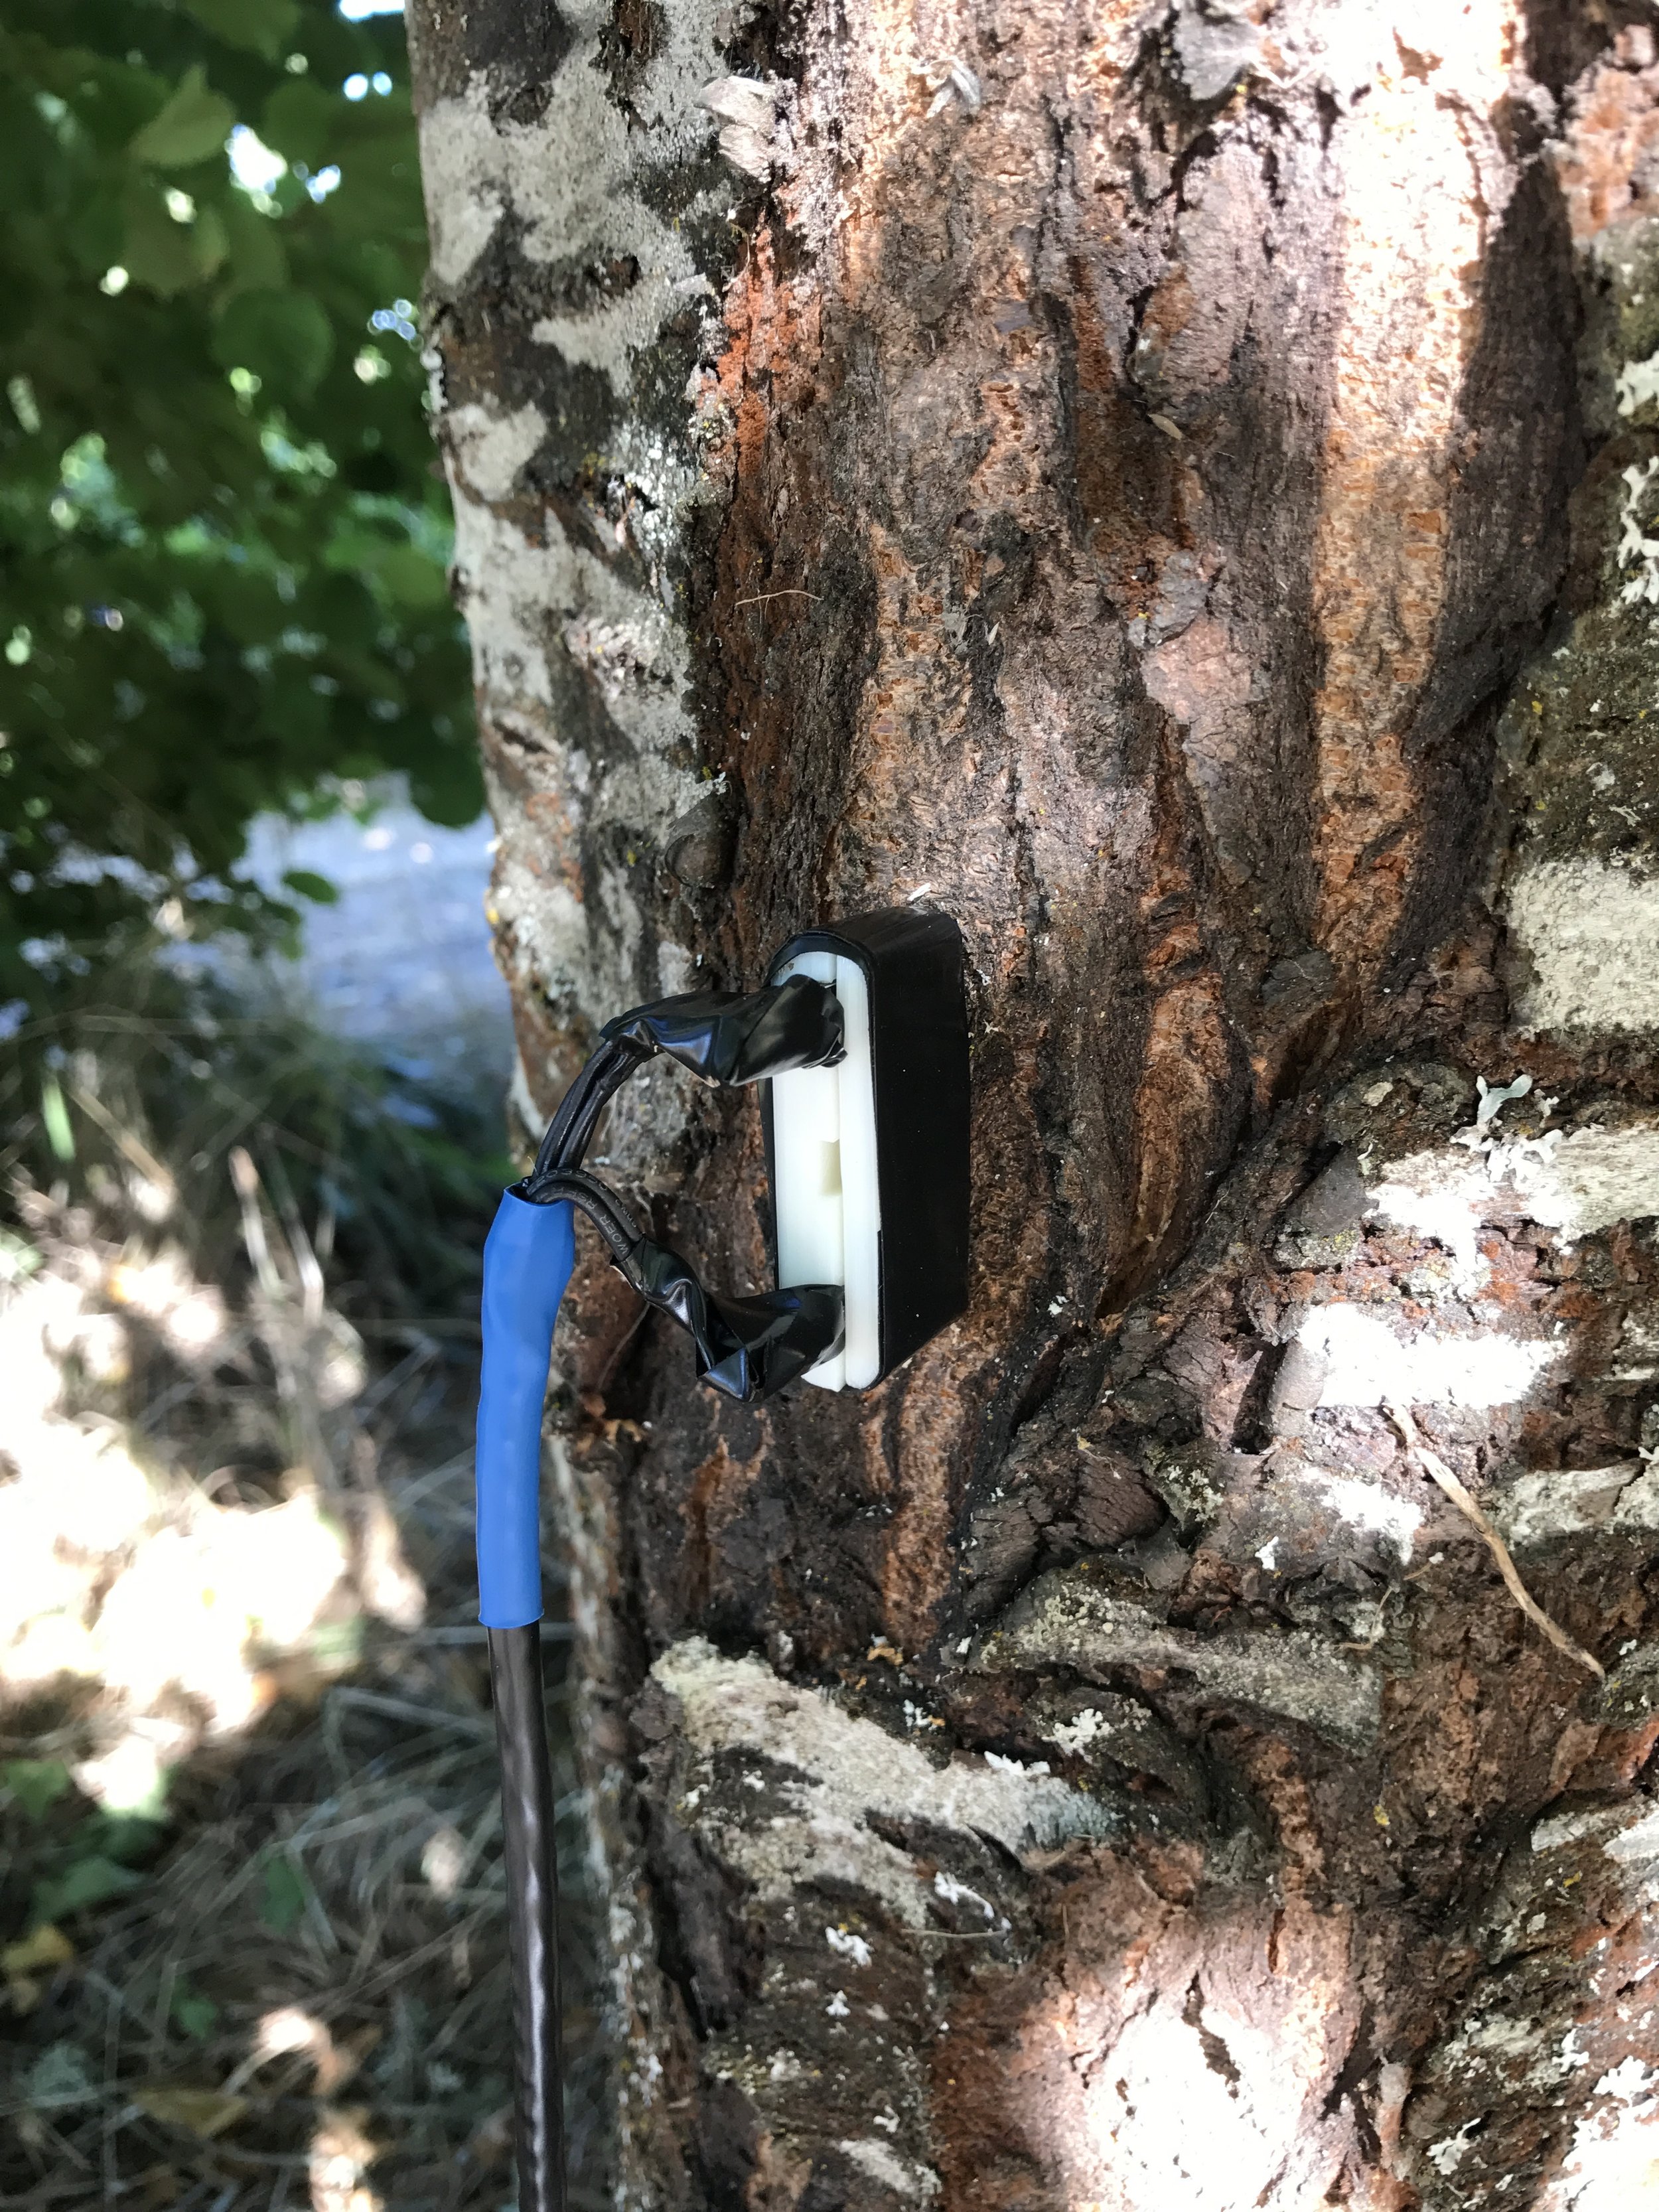 Our TDM probe prototype in the wild cherry tree!&nbsp;(8/03/2018)